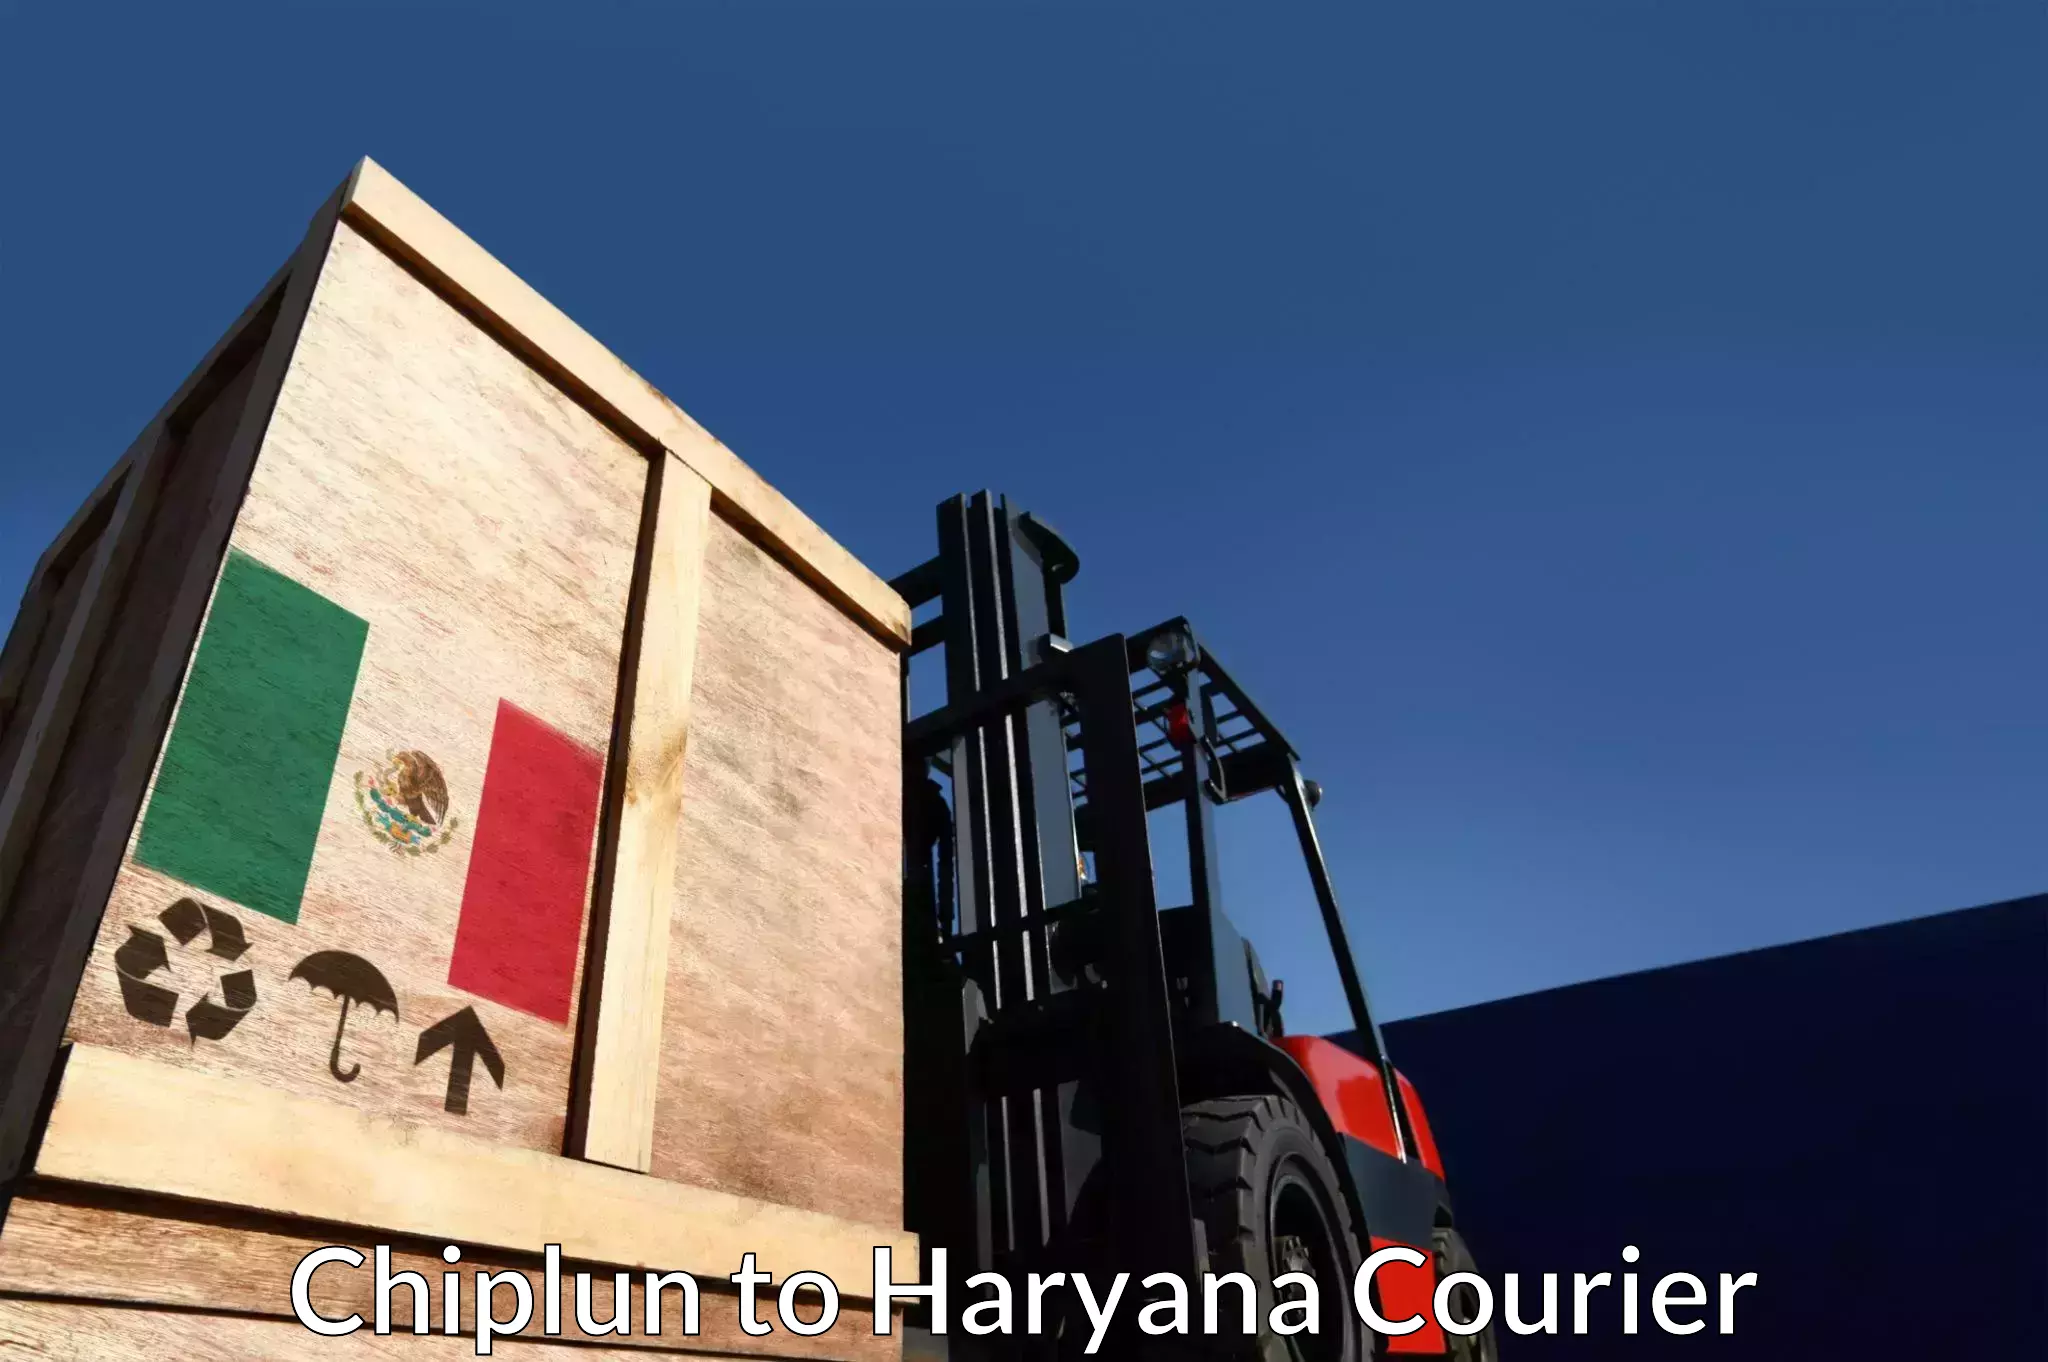 Customer-centric shipping Chiplun to Haryana